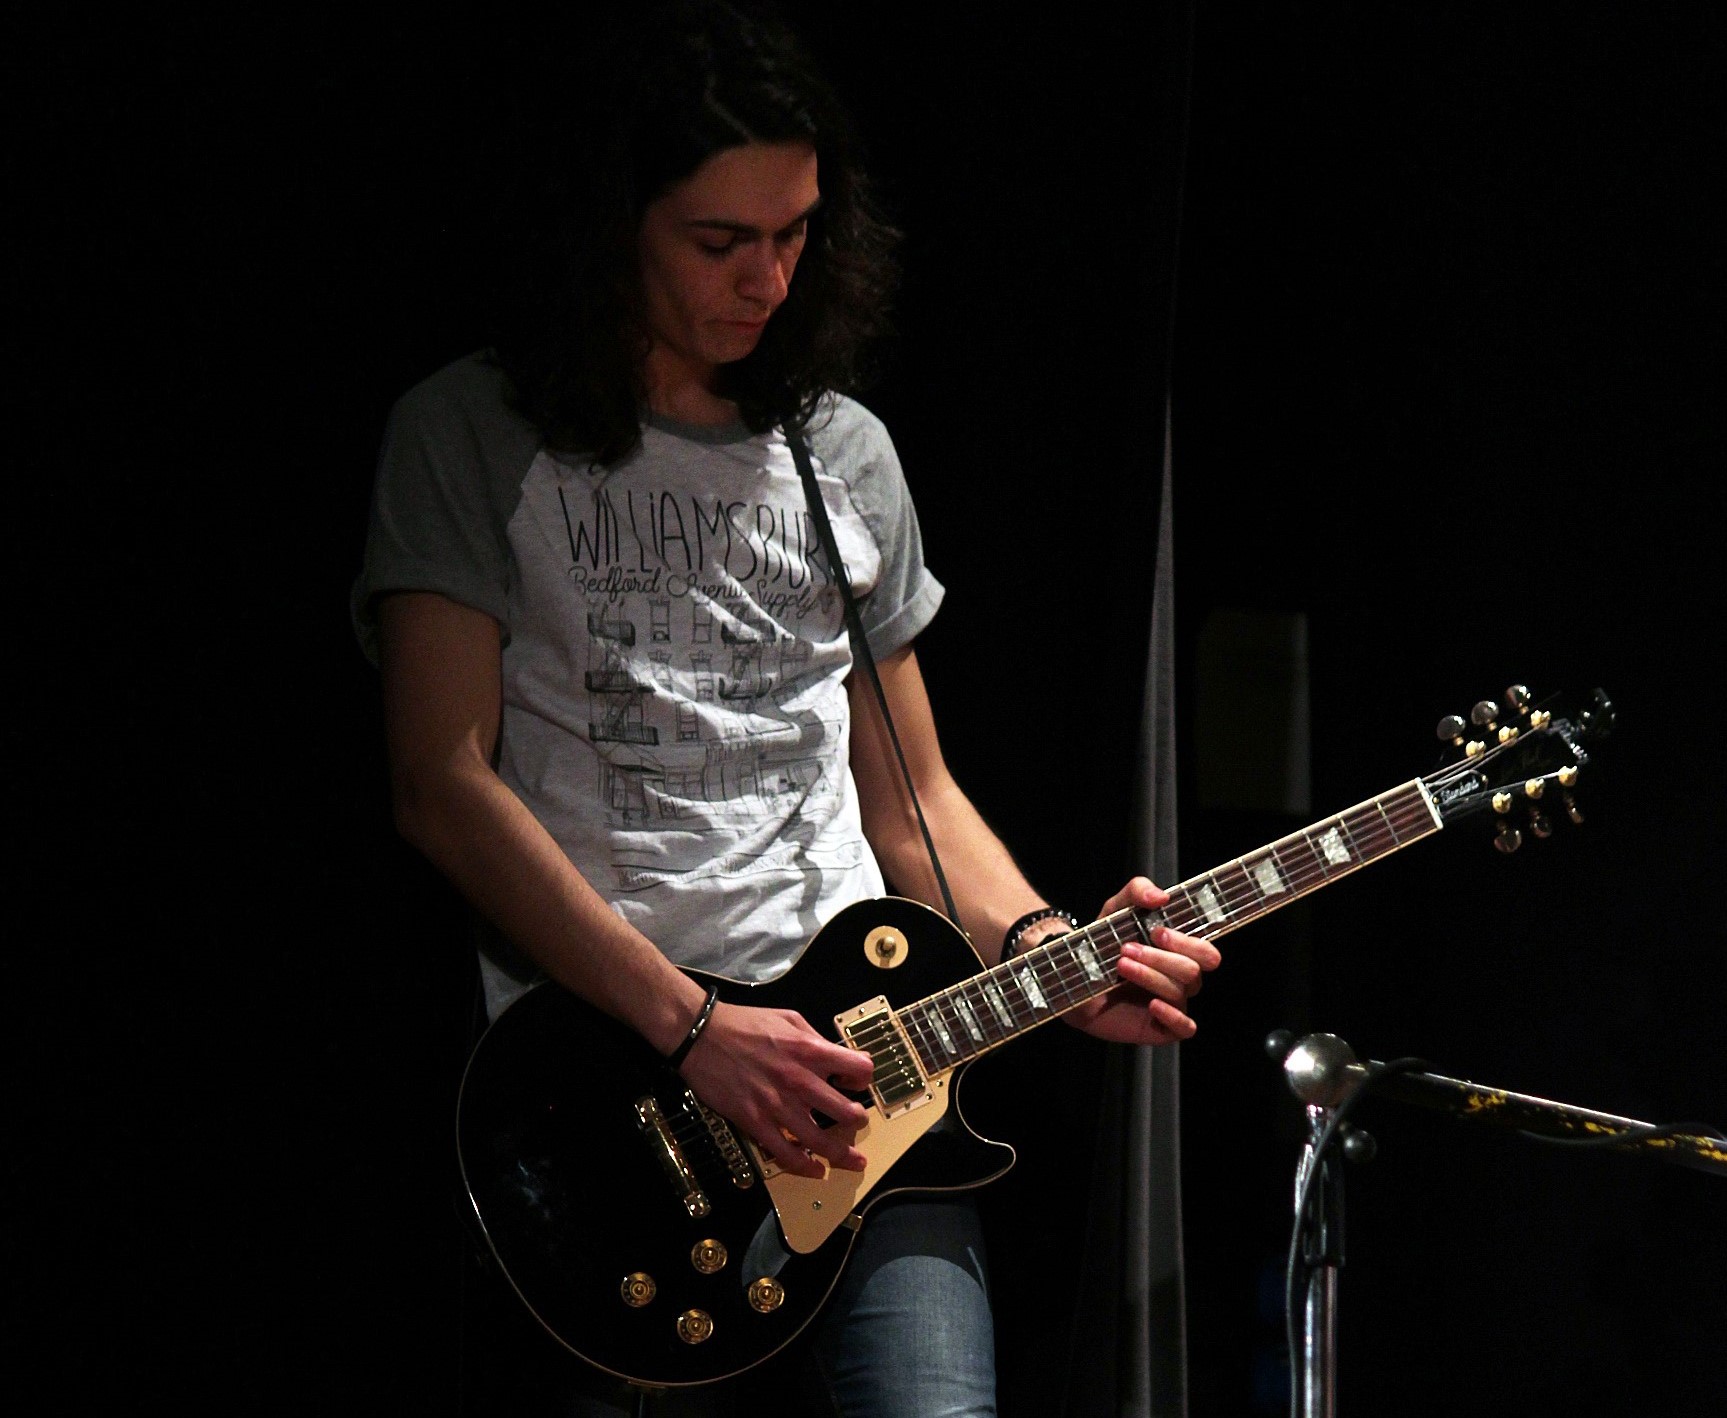 Un giovane studente che suona la chitarra elettrica durante un concerto di presentazione